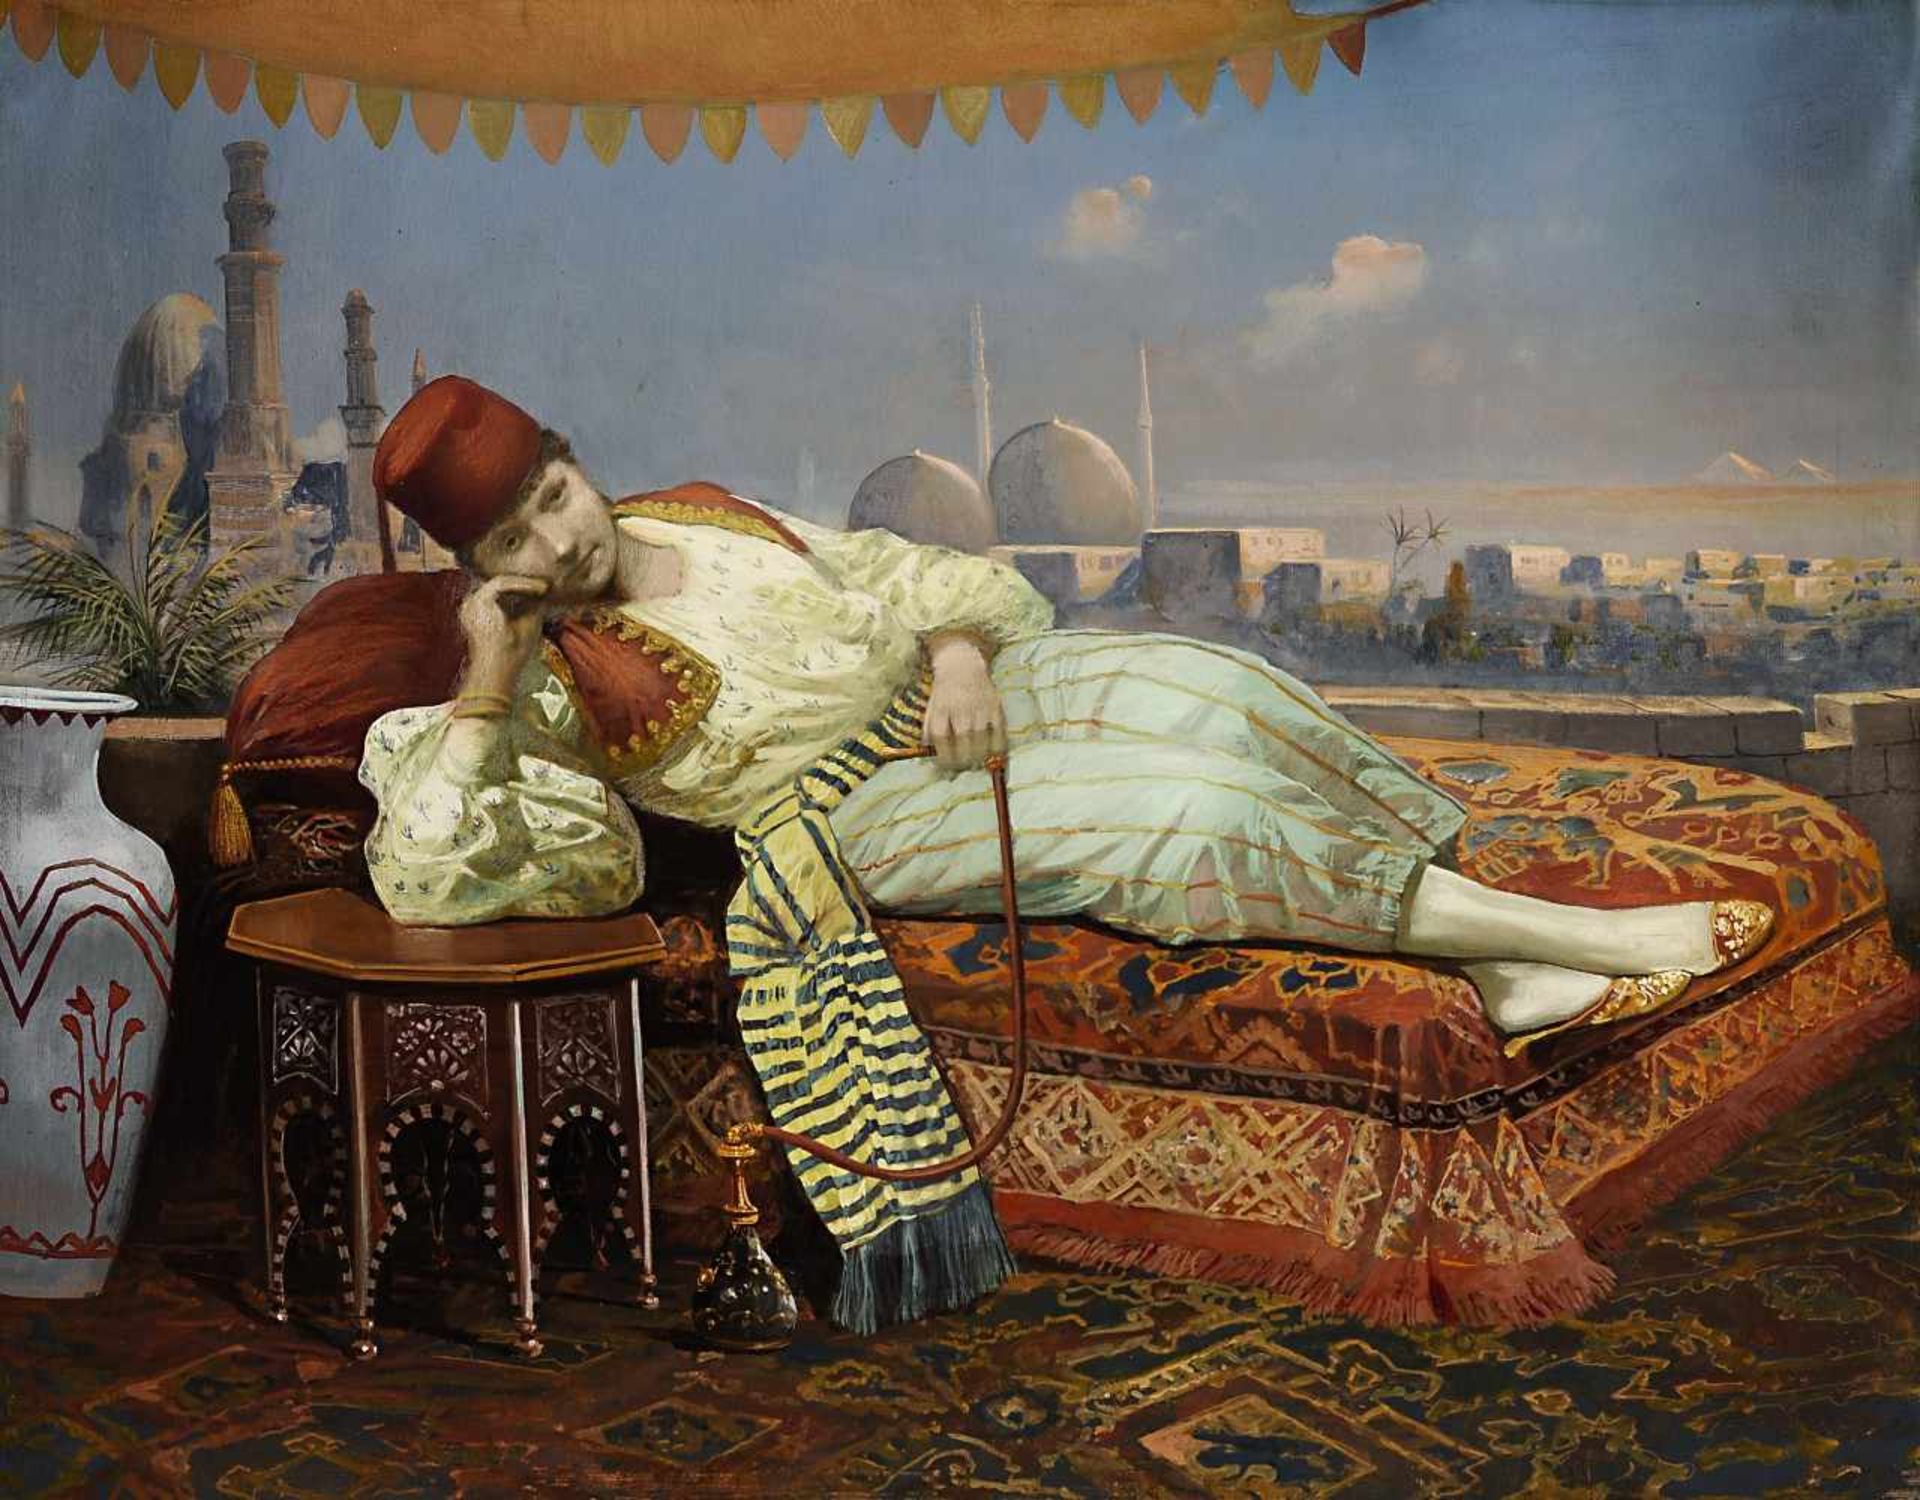 Orientalistwohl 2. Hälfte 19. Jh.Junger Mann, auf dem Diwan liegend und eine Wasserpfeife rauchendIm